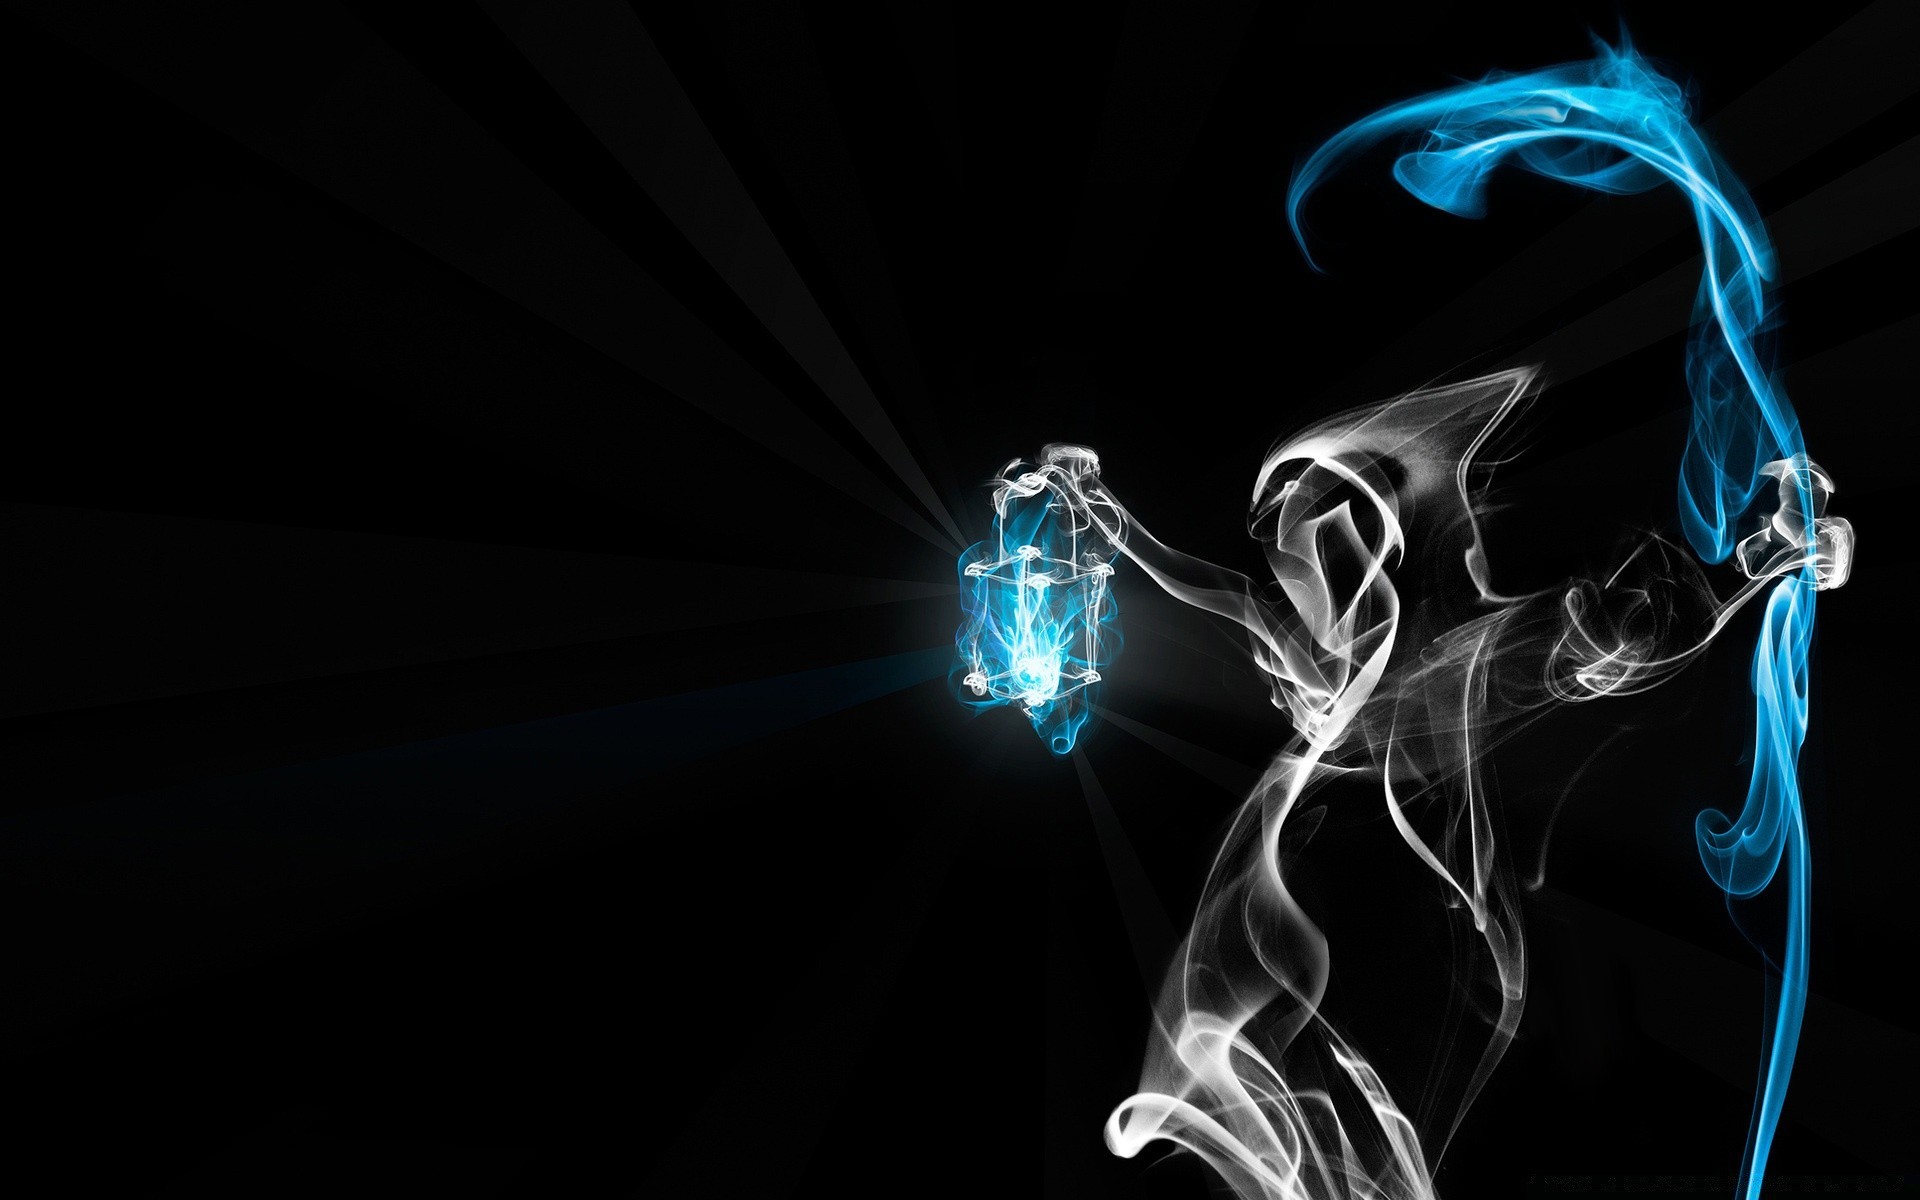 фэнтези дым аннотация свет пламя рабочего стола искусство темный дизайн энергии формы график движения волна